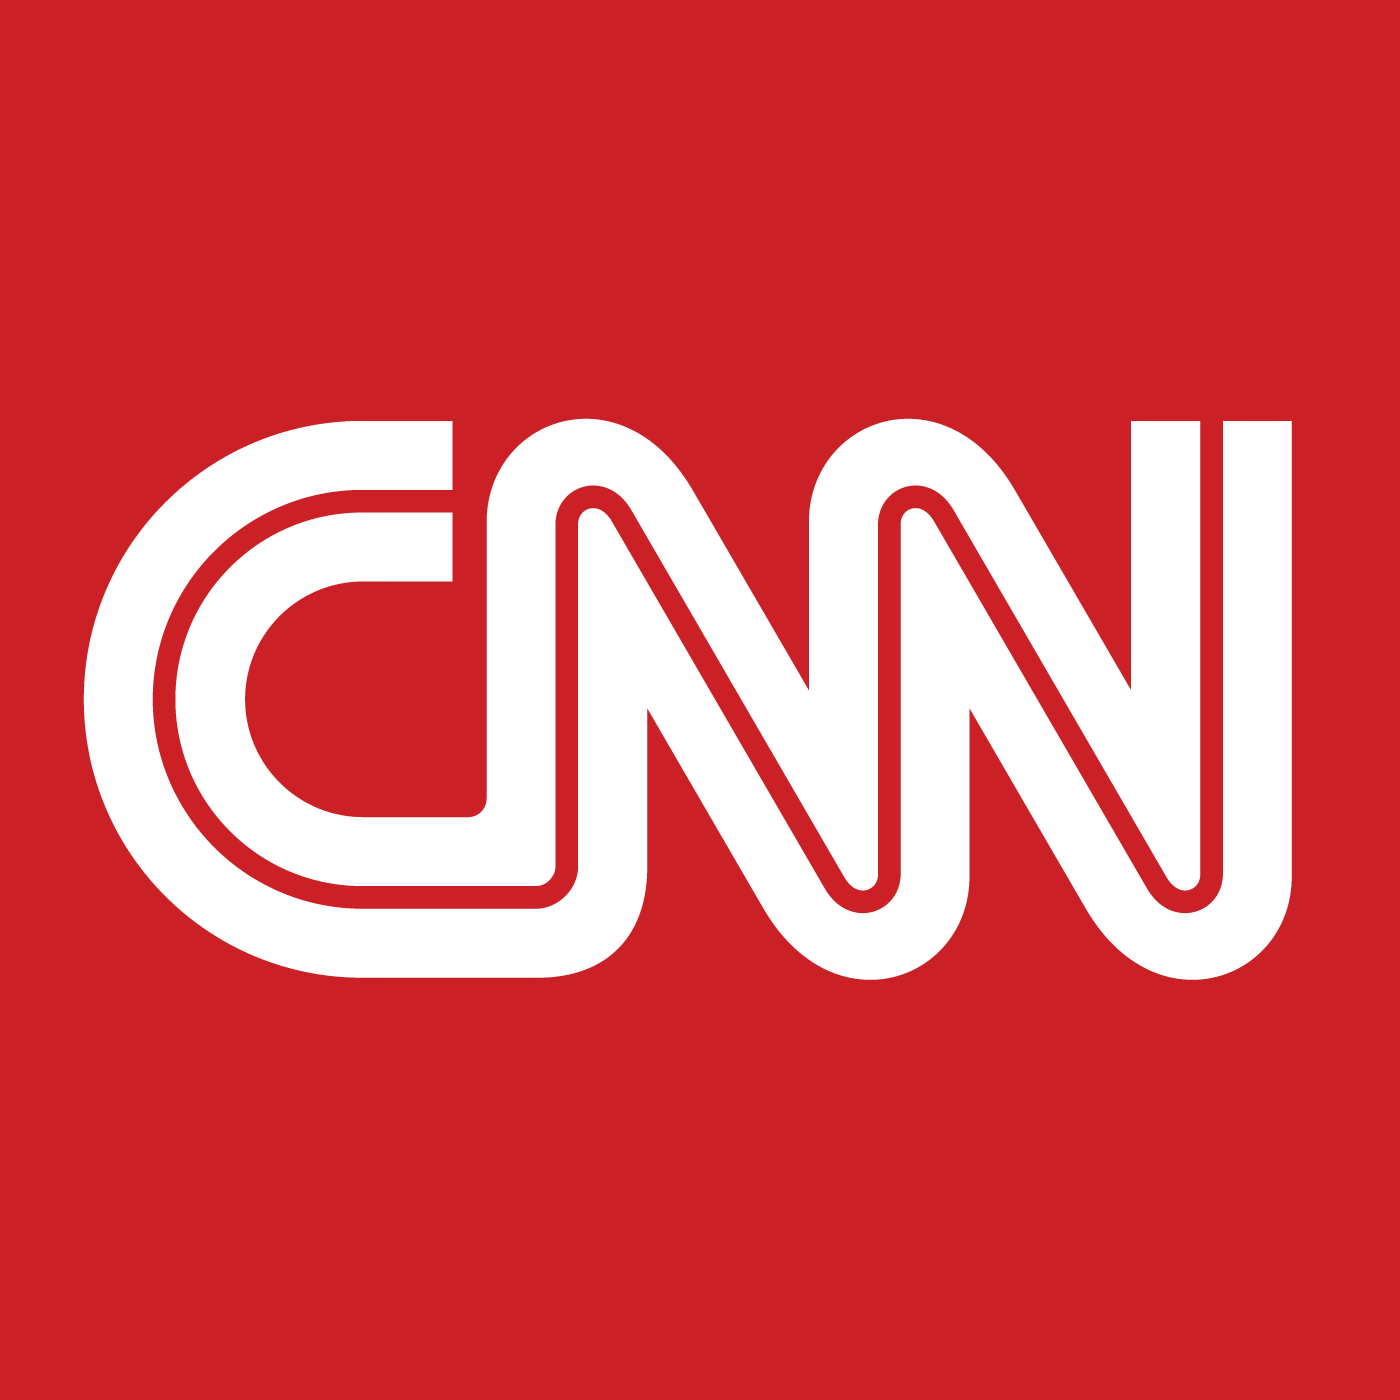 CNN2 Logo - CNN logo